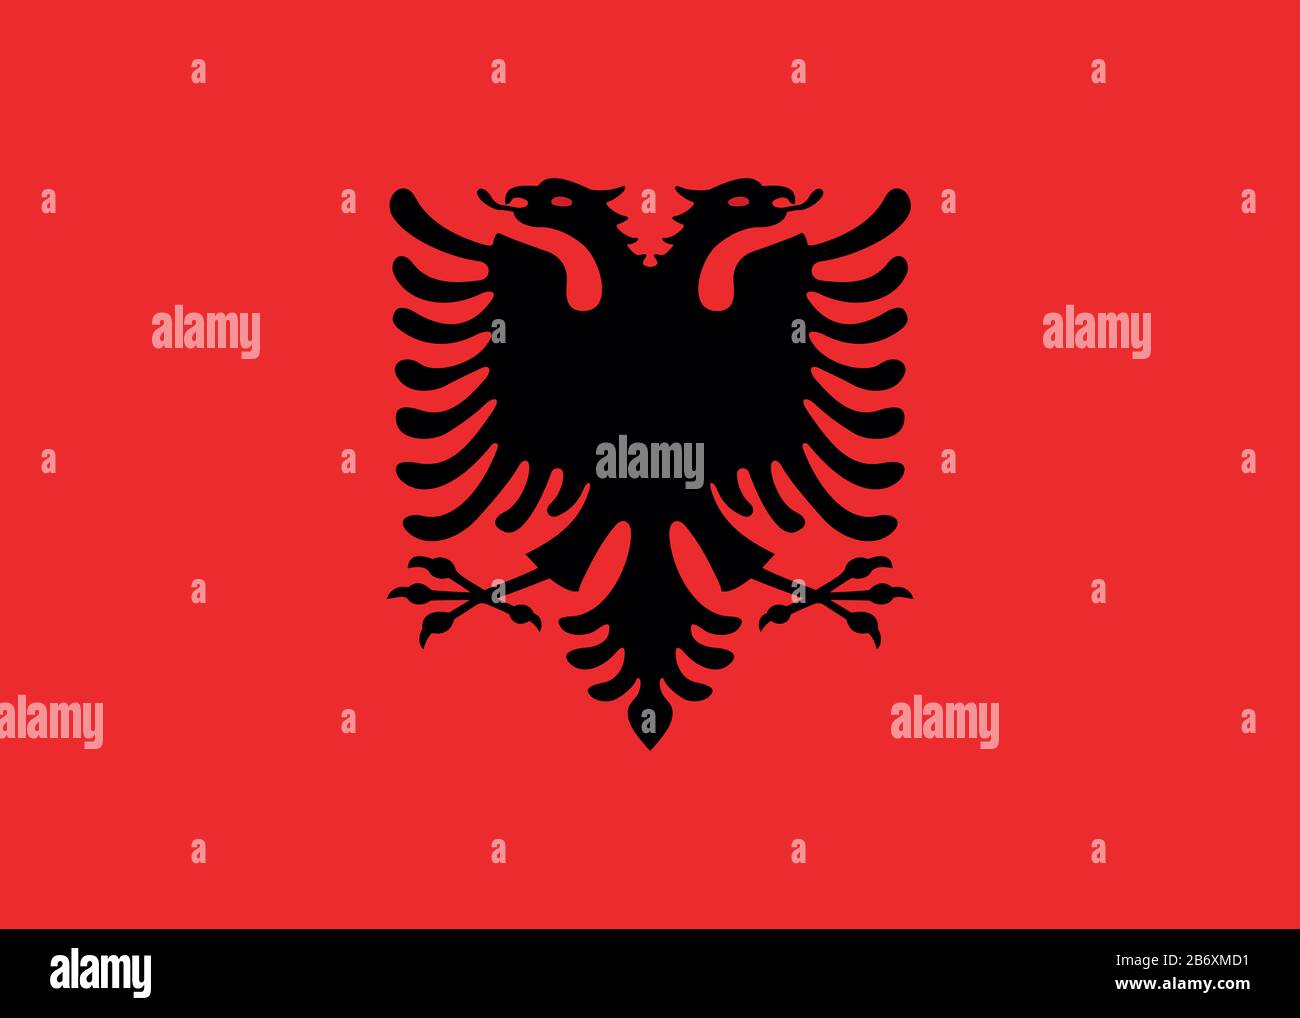 Flag of Albania - Albanian flag standard ratio - true RGB color mode Stock Photo